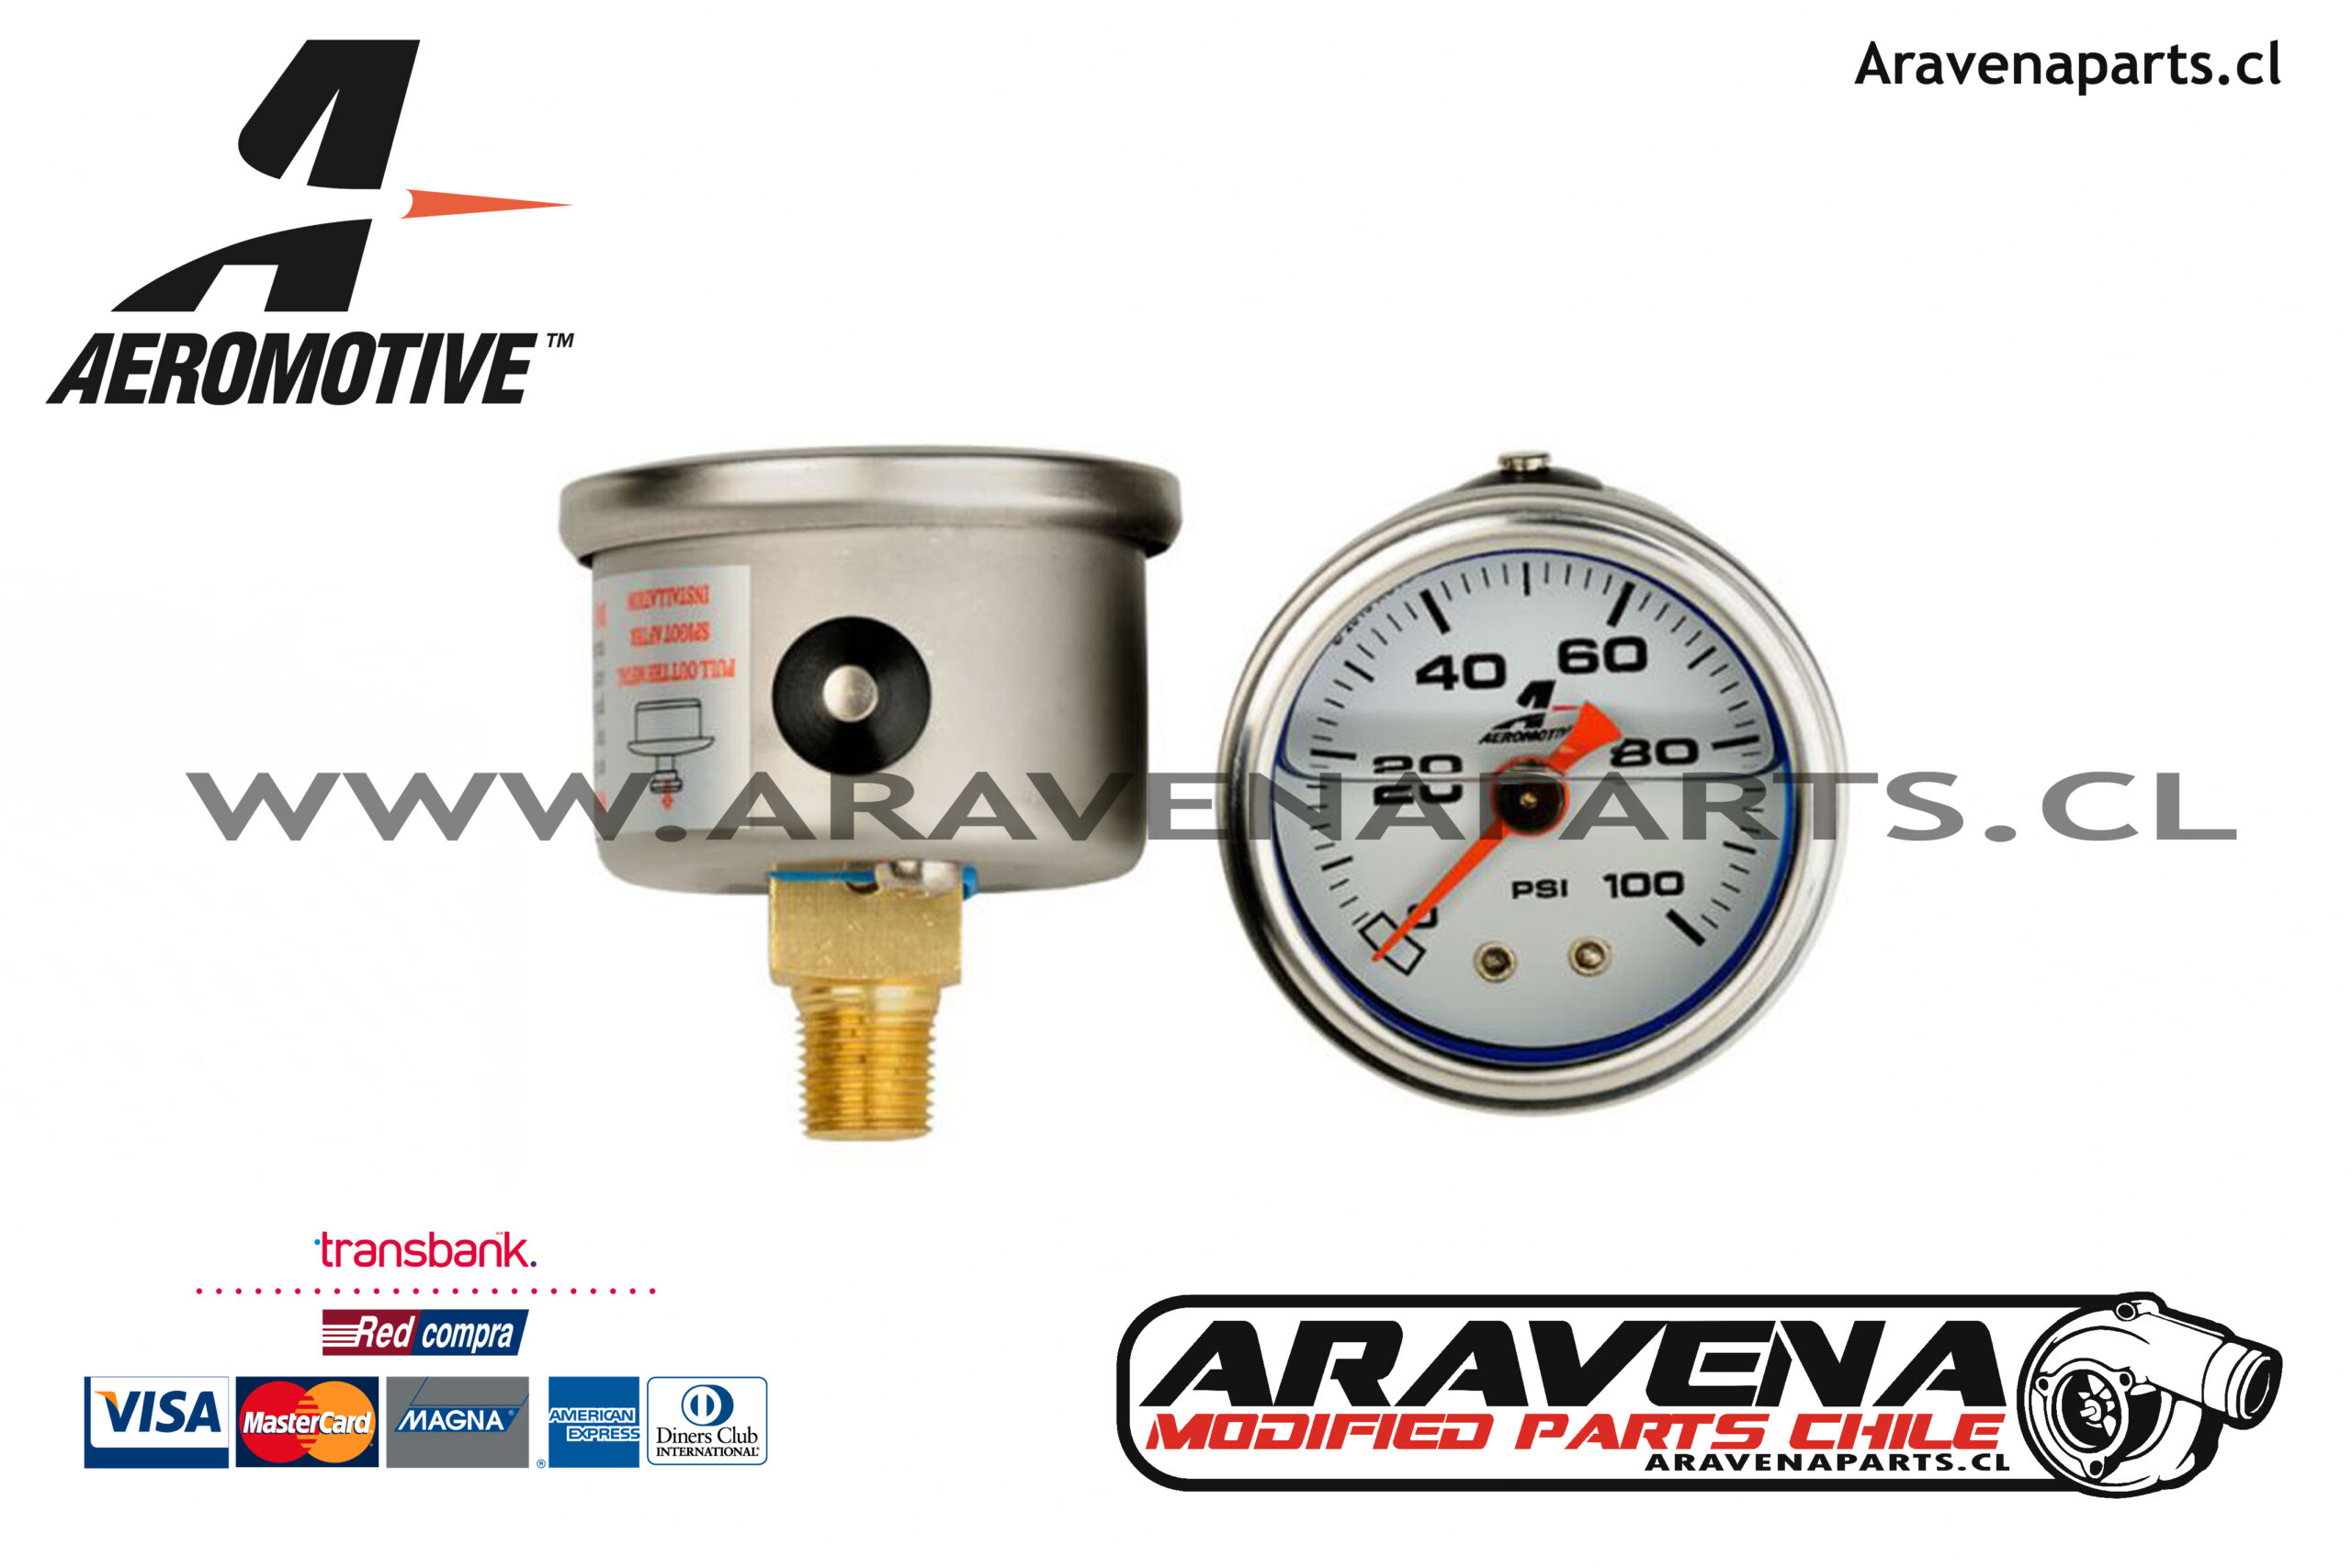 Manómetro de presión de agua Manómetro de aire, aire, aceite